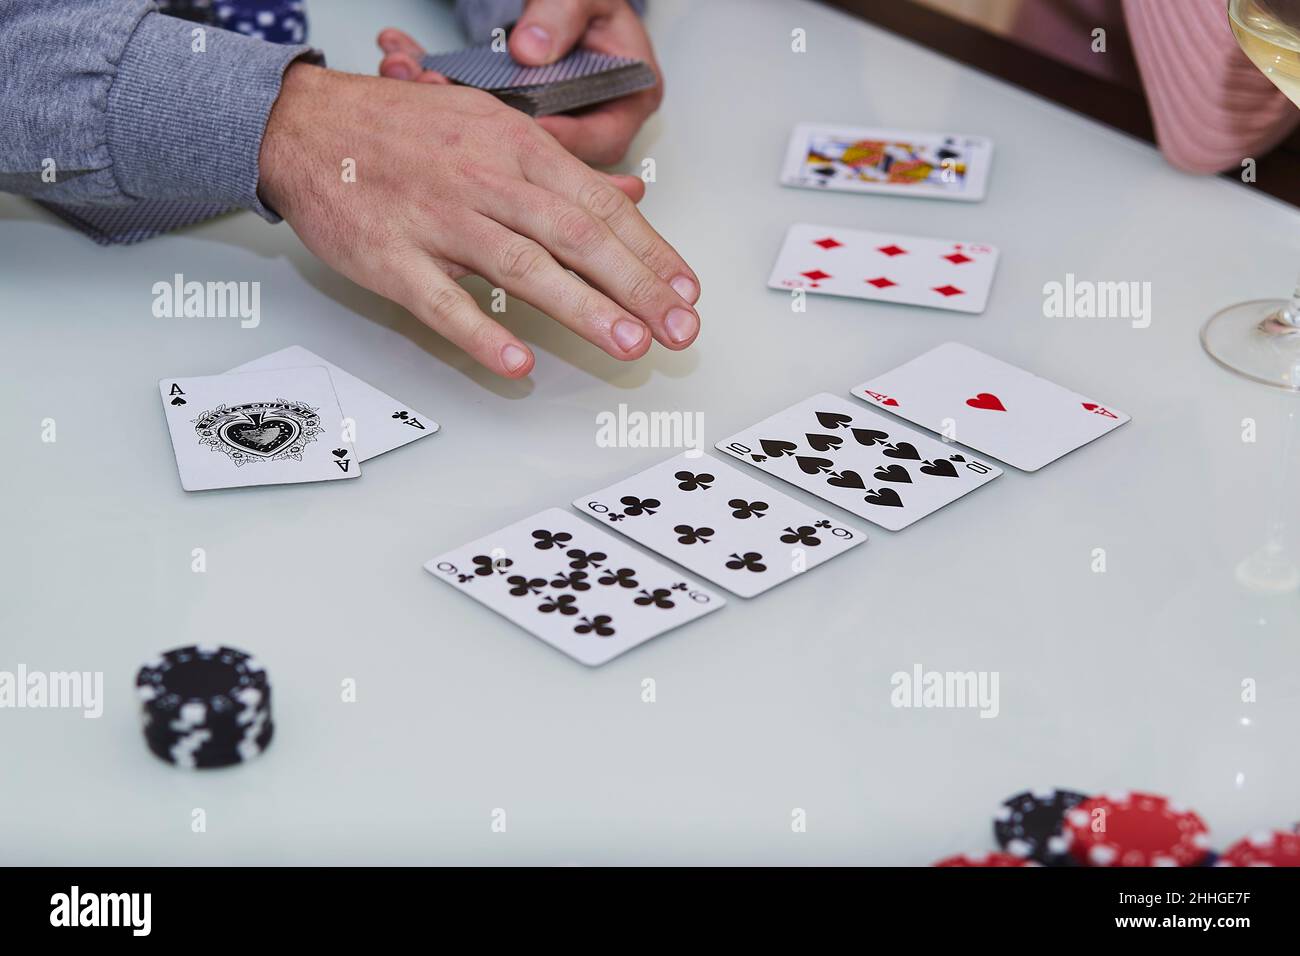 Carte shuffle mani uomo. 2 assi sul tavolo in un gioco di poker con chip,  carte sul tavolo. Godendo il momento, detox digitale con gli amici.  Fotografia di stile di vita. Momento